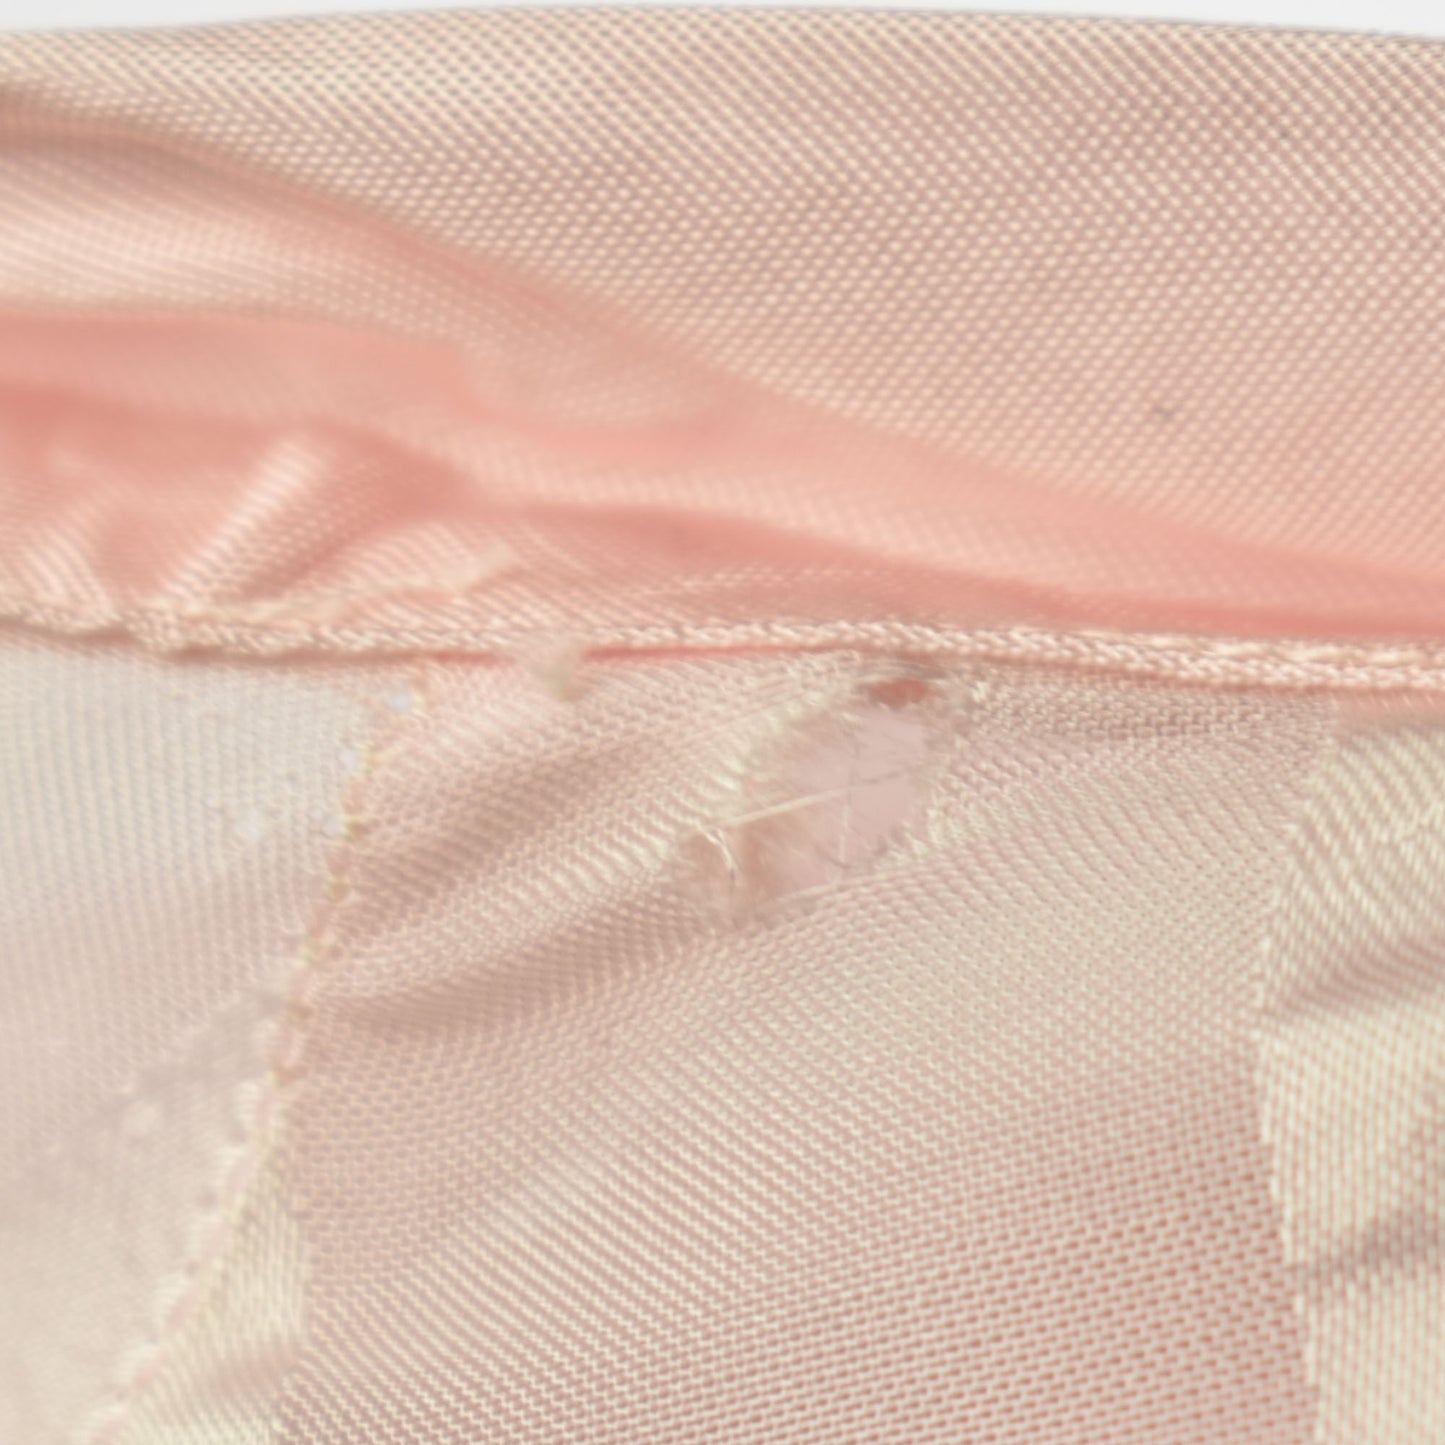 Vintage 1930s Sheer Stripe Pink Dress / Lingerie Slip